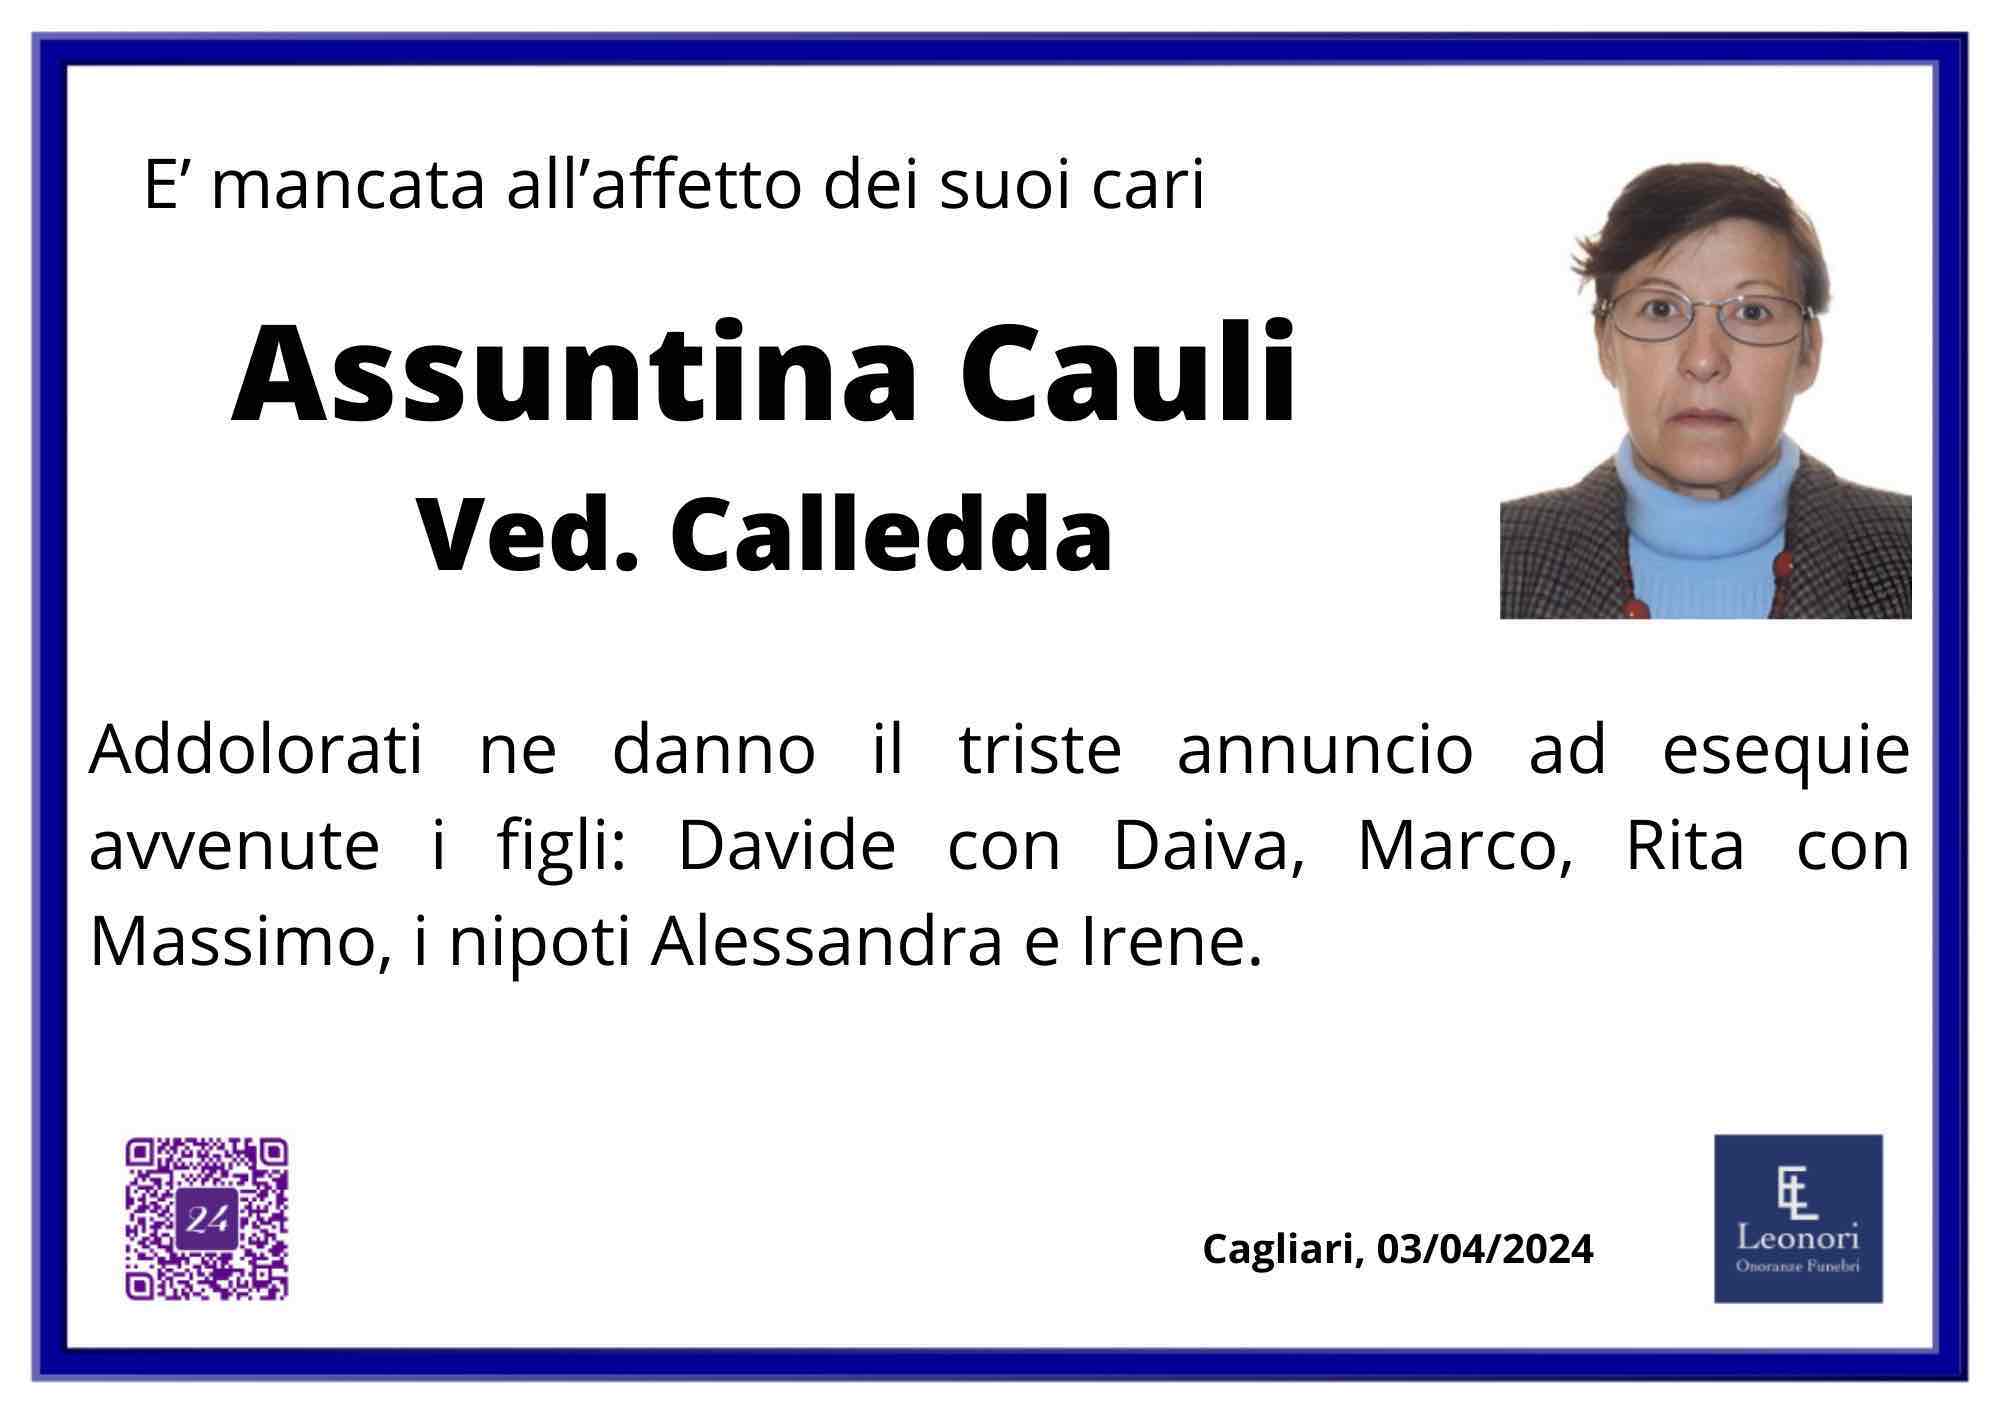 Assuntina Cauli